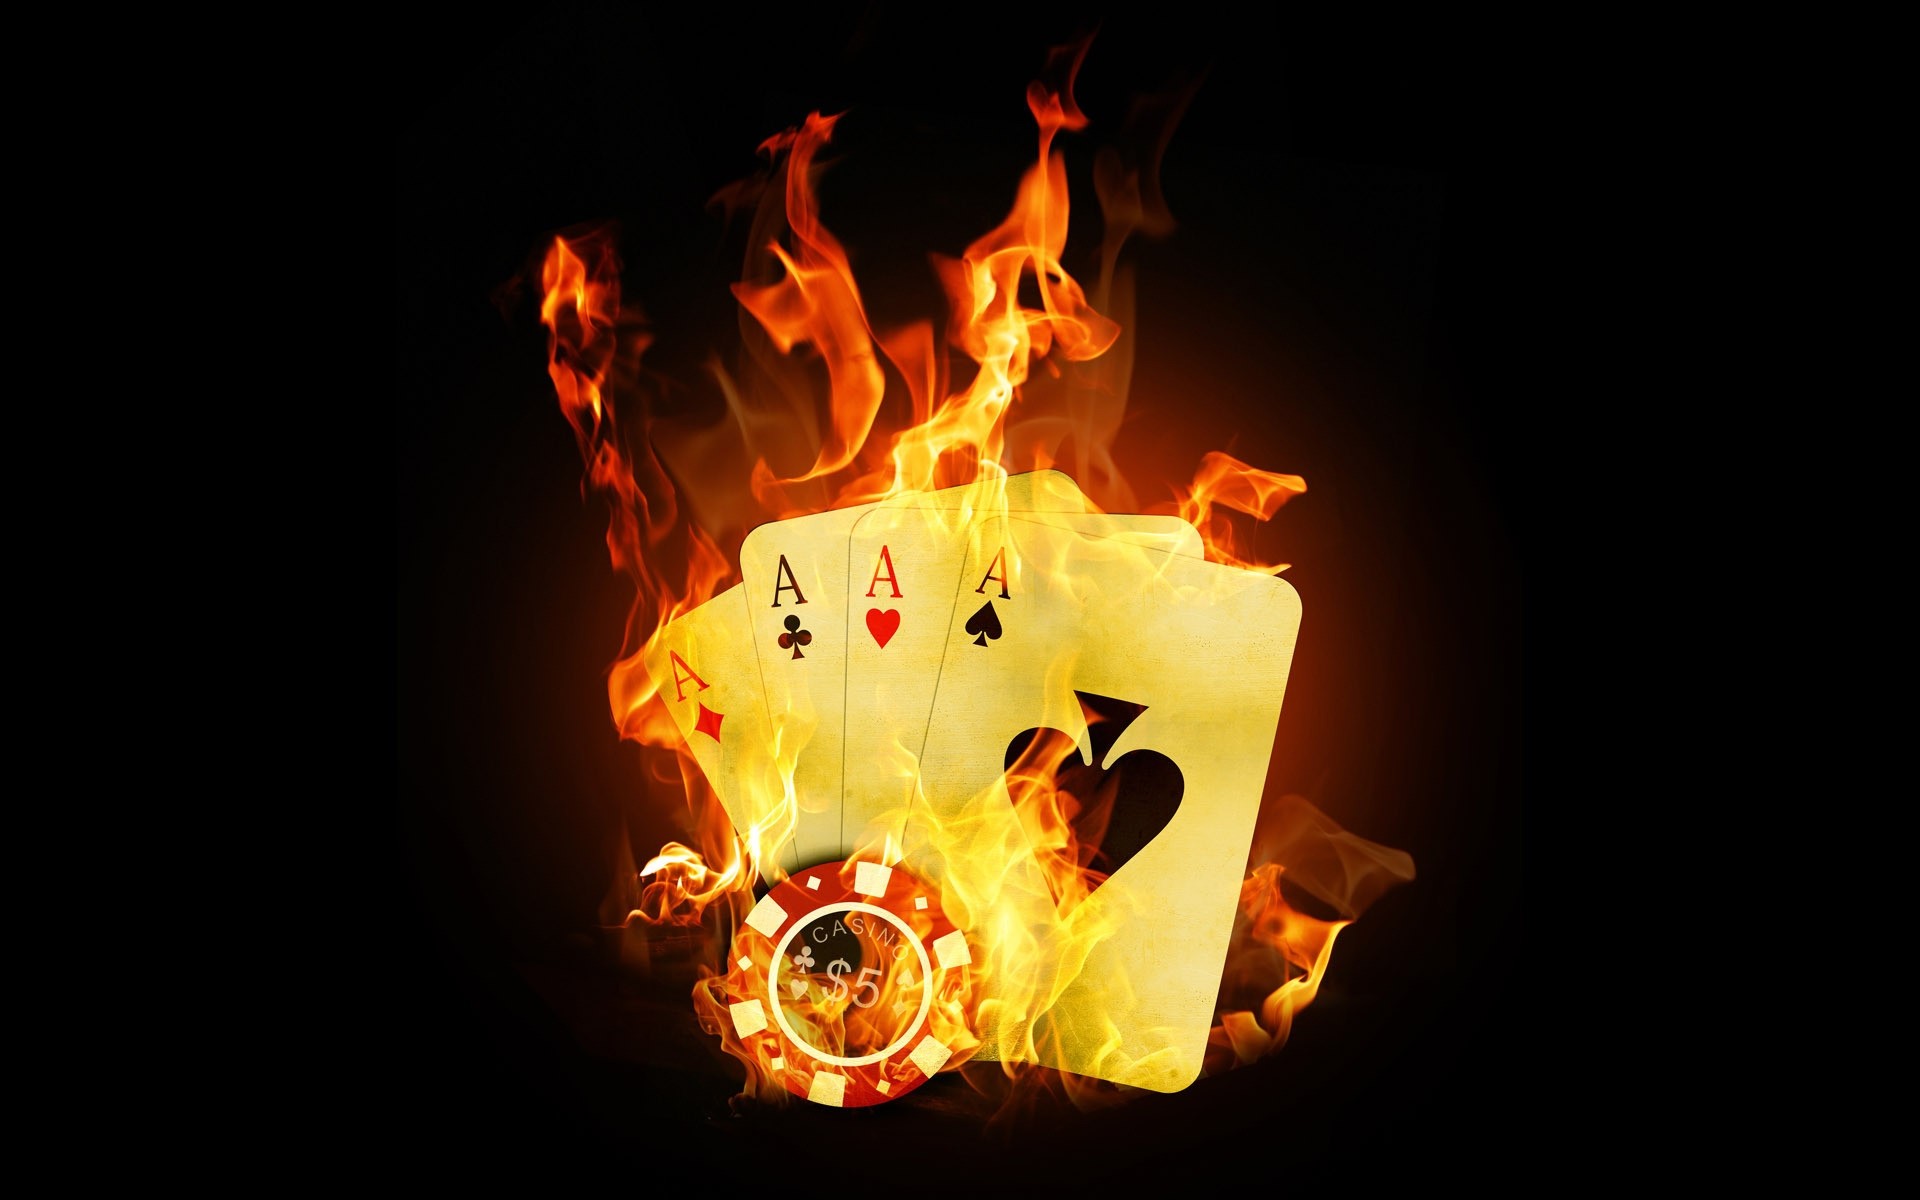 other games пламя горячая блейз энергии тепло сжечь легковоспламеняющиеся дым опасность казино огонь фото фон